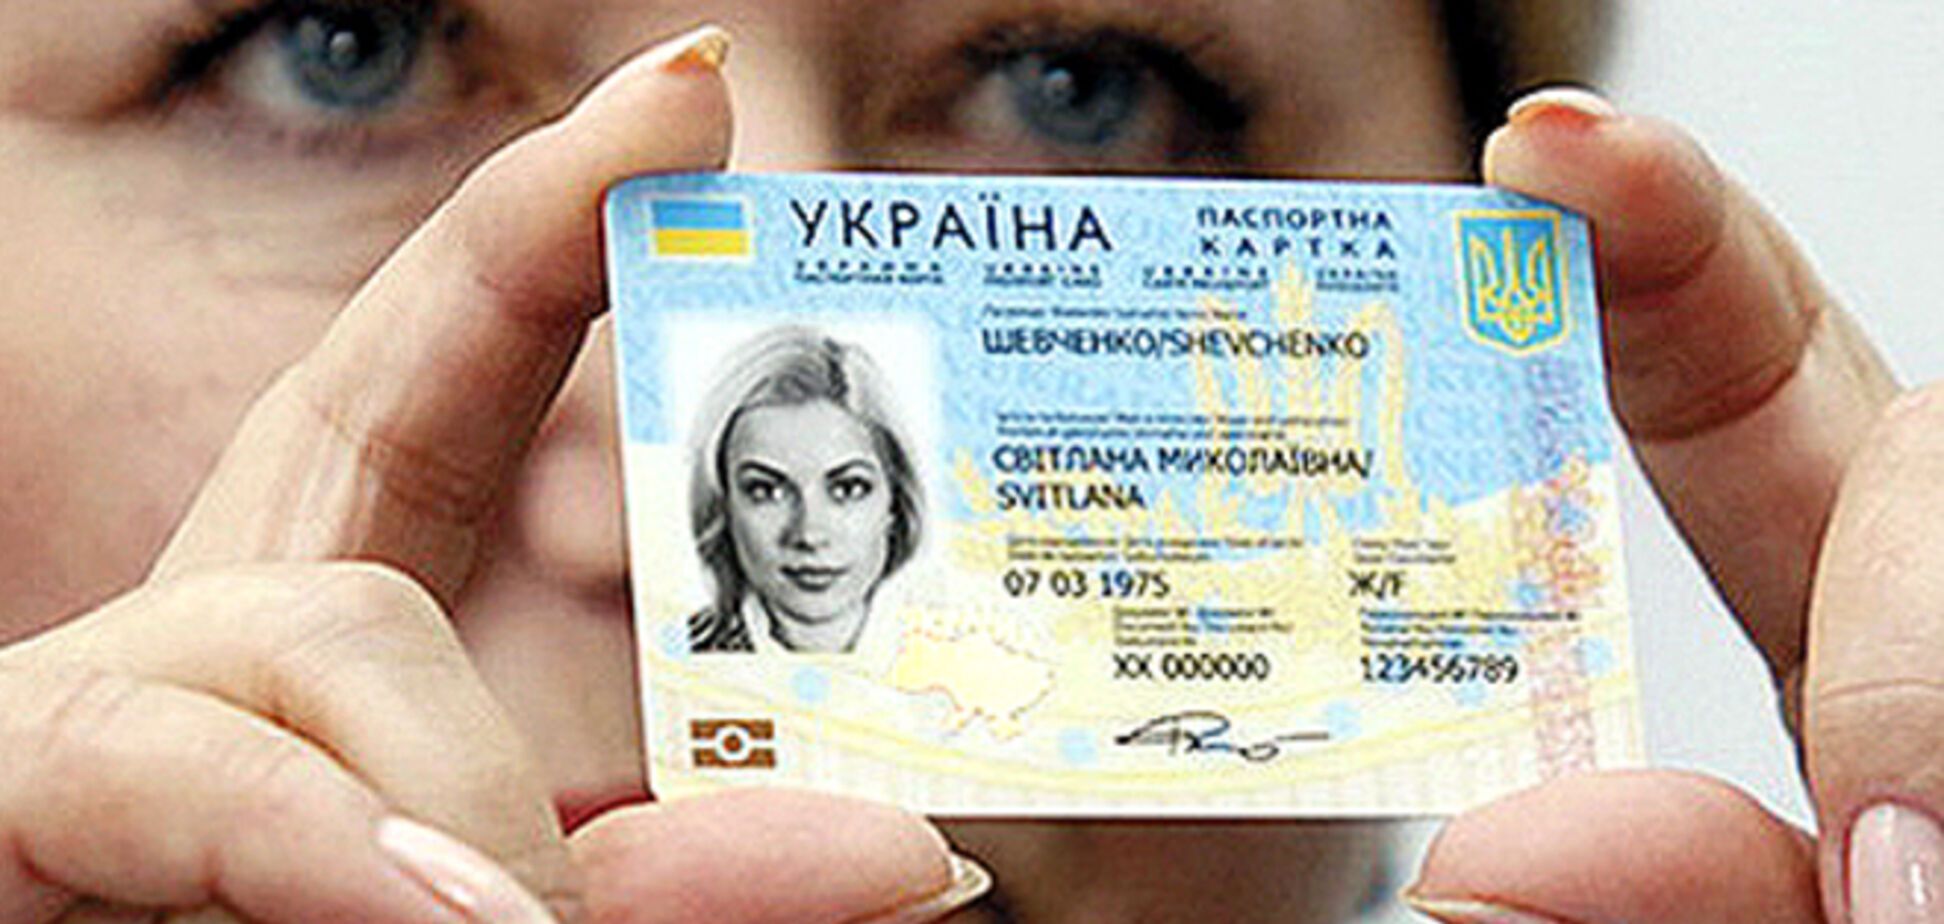 Биометрический паспорт будет стоить около 15 евро